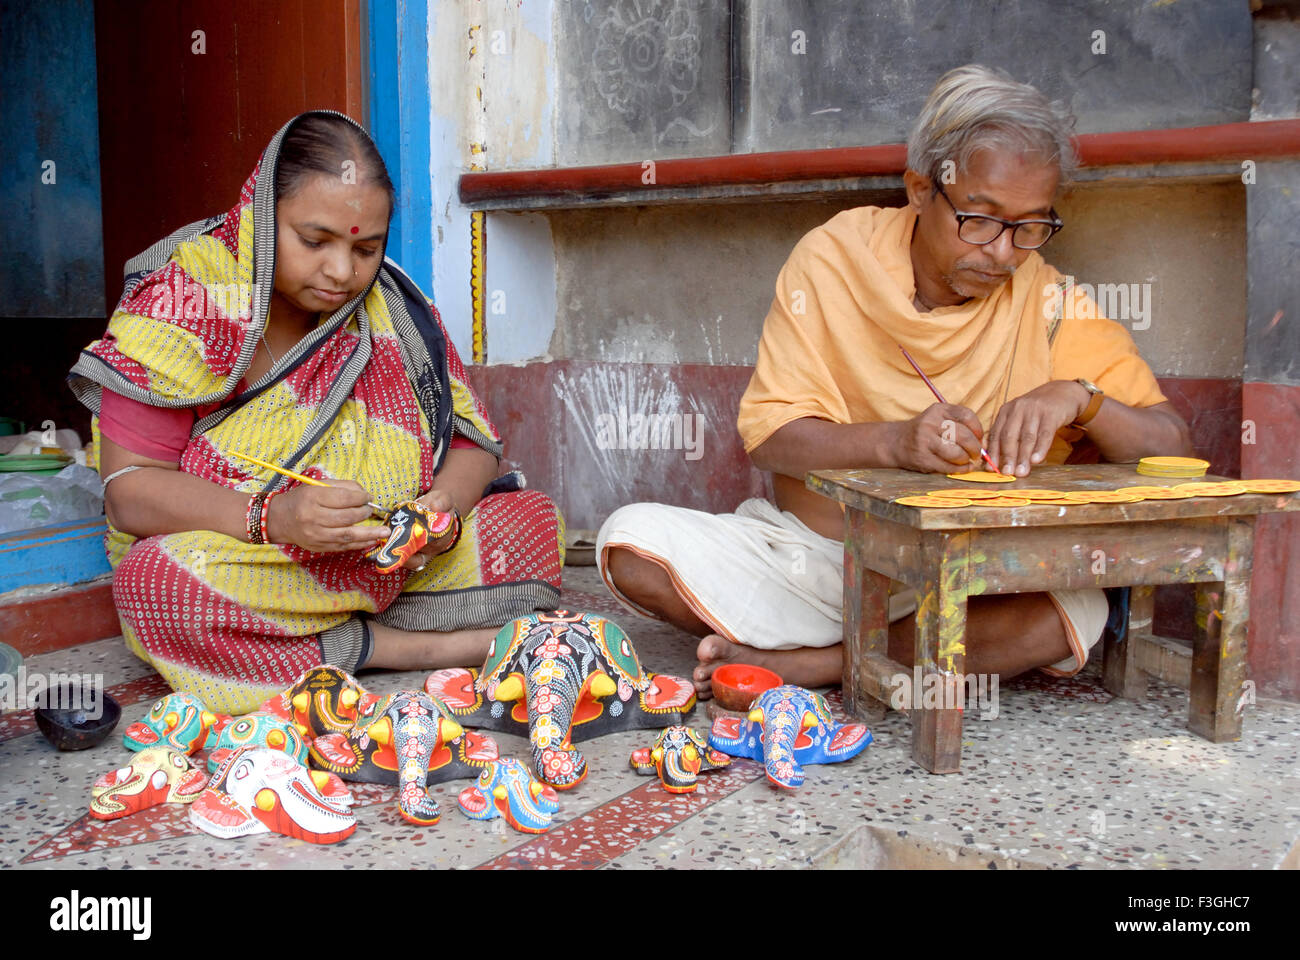 Les gens qui peignent des jouets Raghurajpur appelé village d'artistes traditionnels de la fabrication de peintres Patta Chitras Bhubaneswar Orissa Odisha Inde Asie MR#736A Banque D'Images